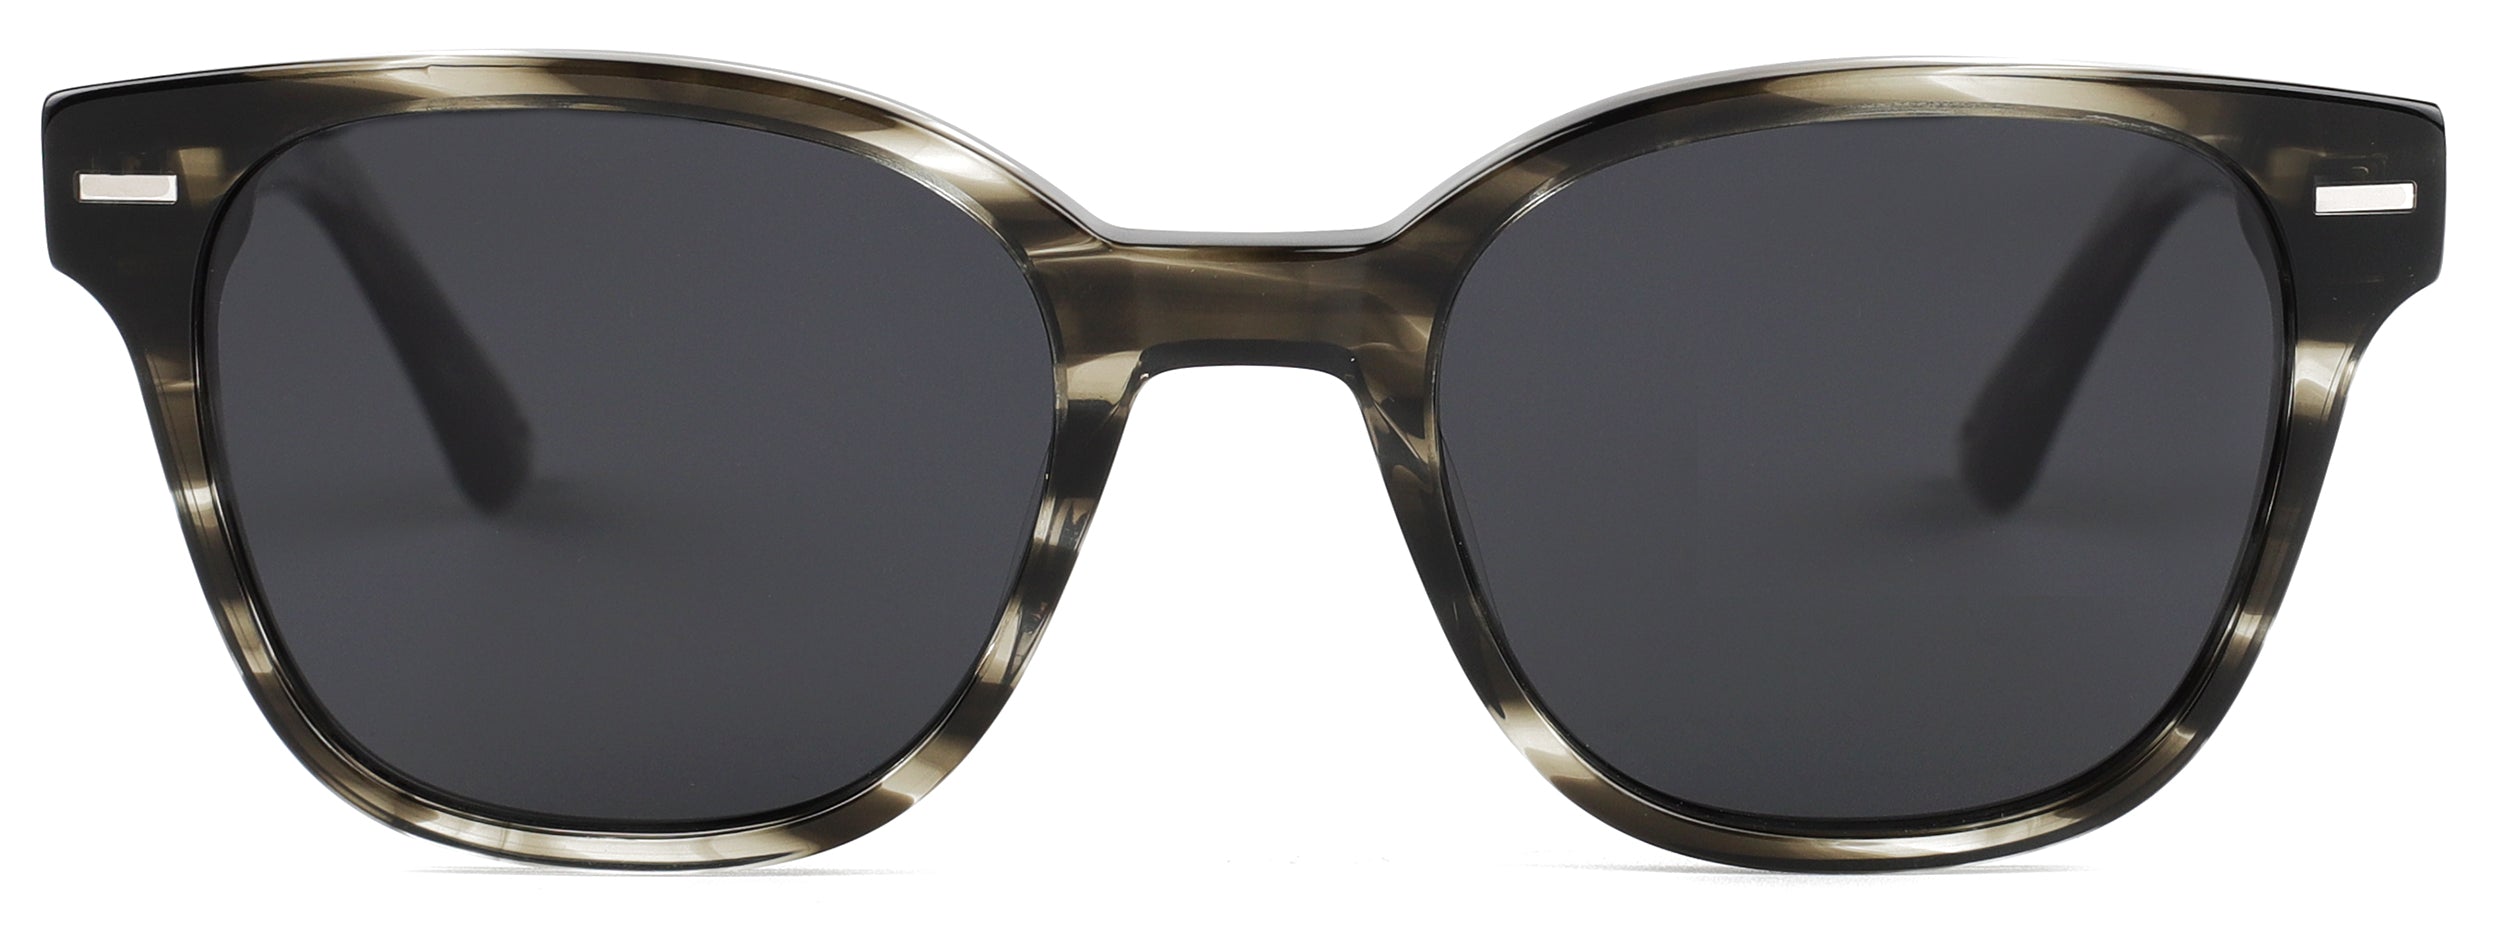 Farro Sunglasses